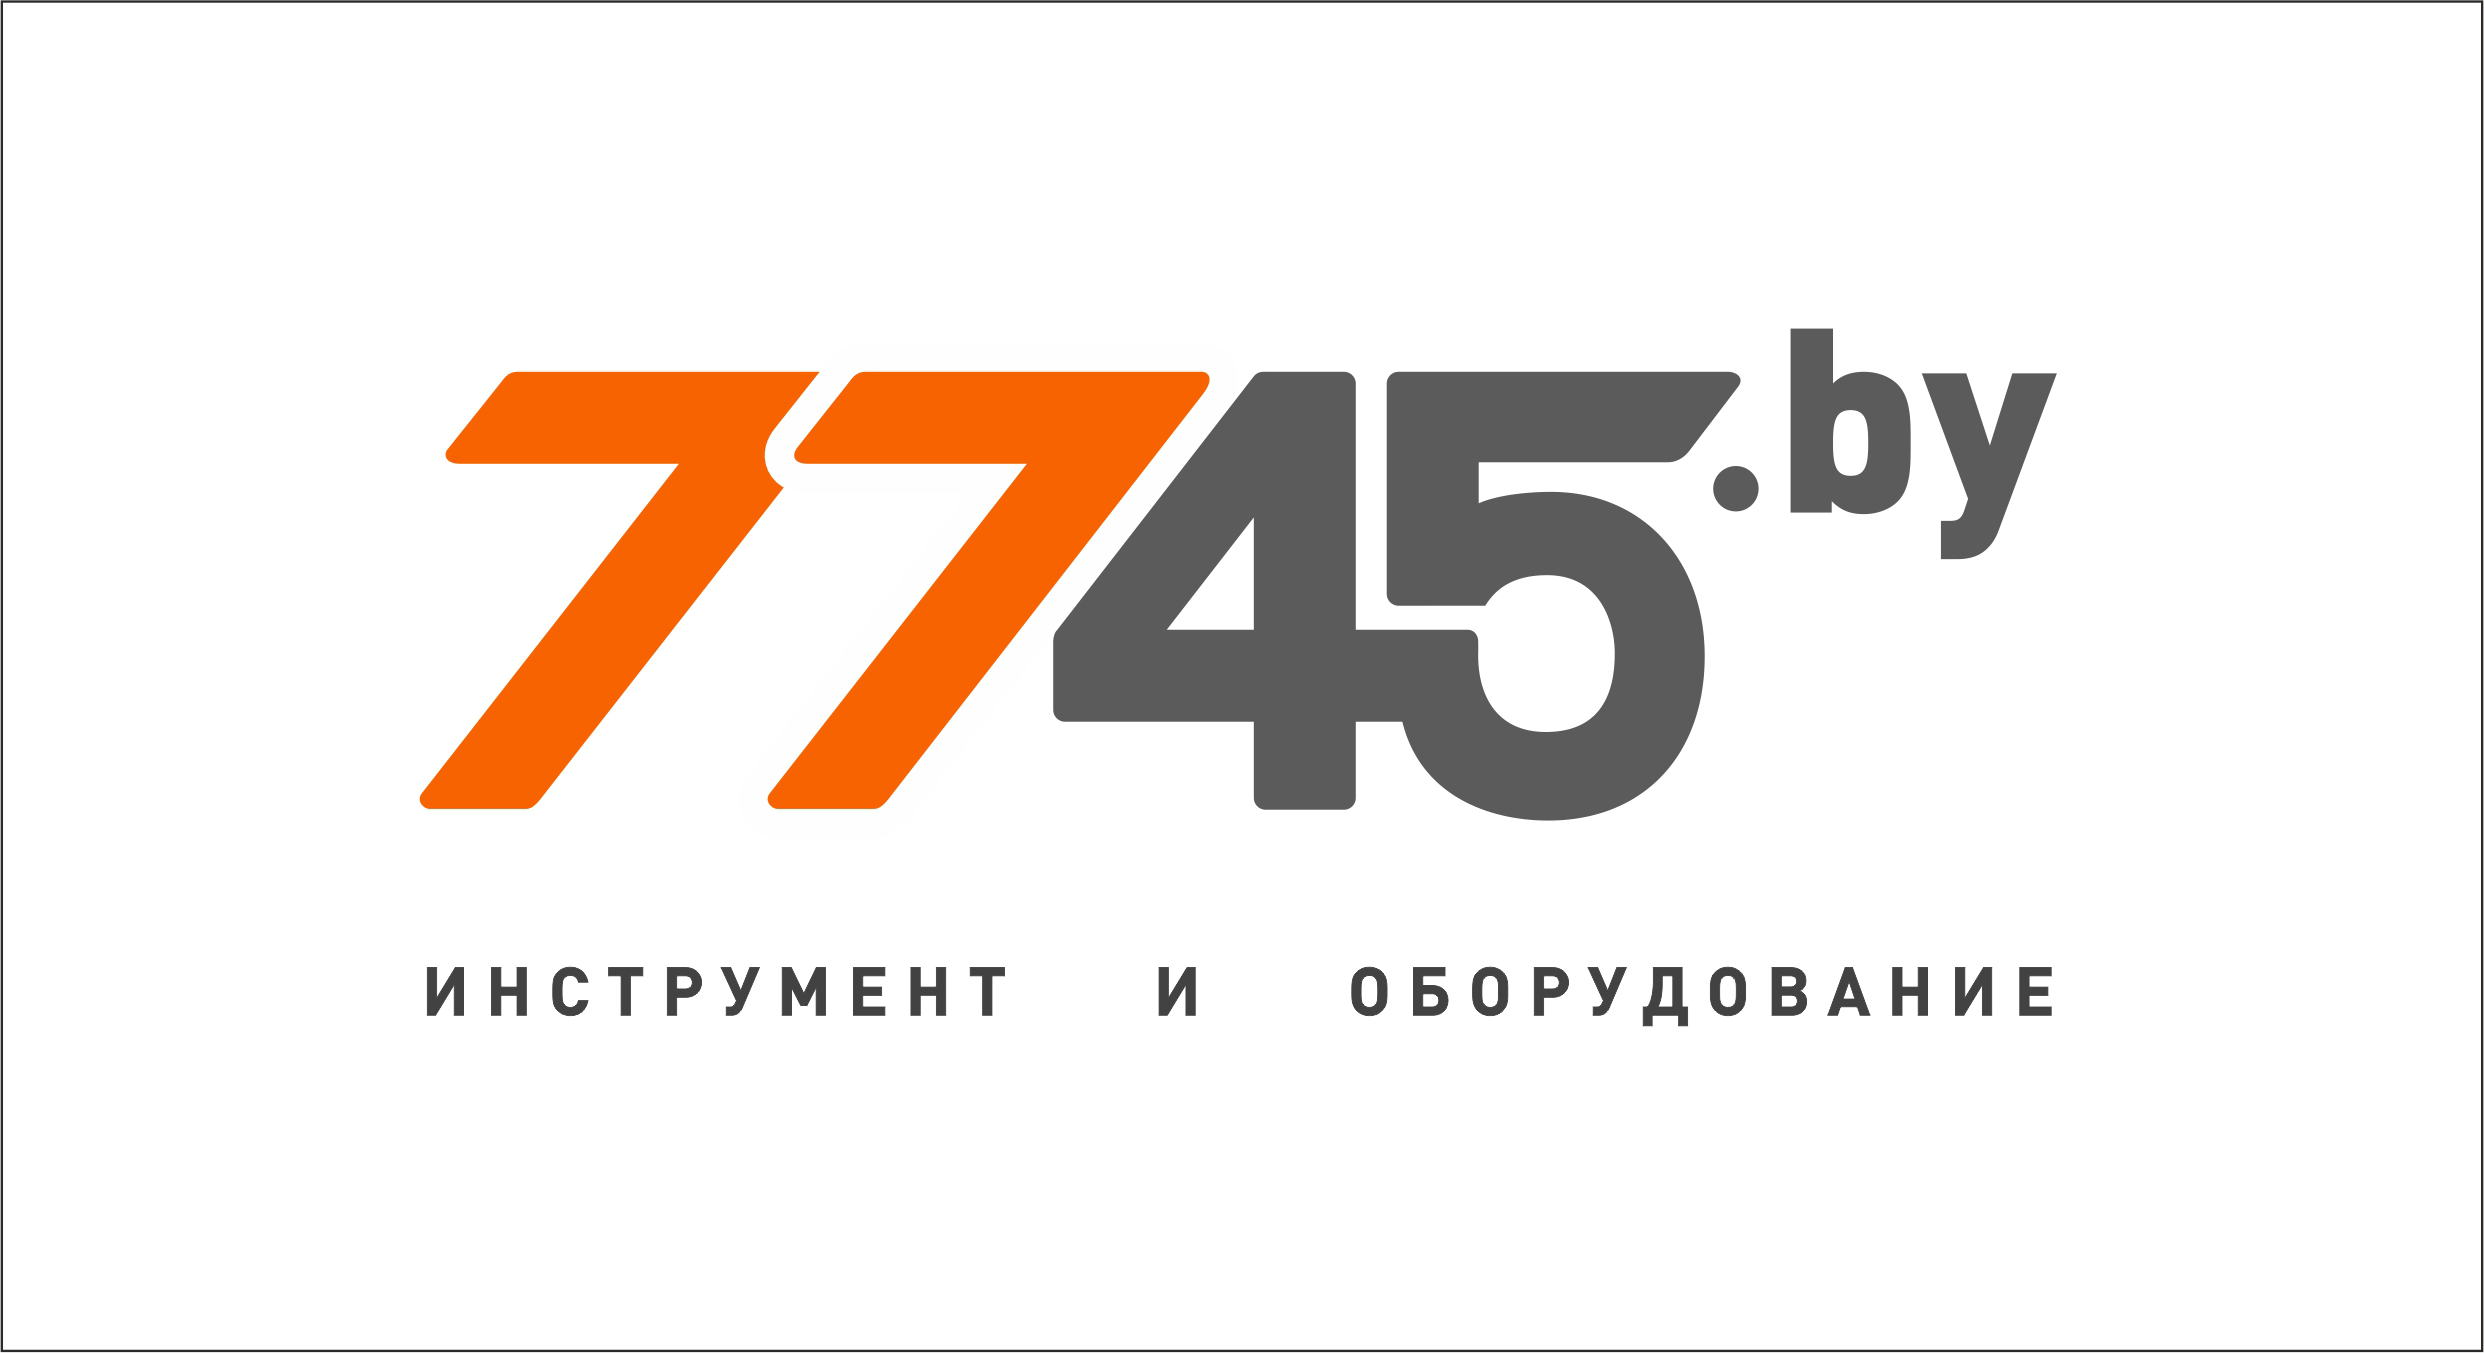 7745 Бу Интернет Магазин Солигорск Каталог